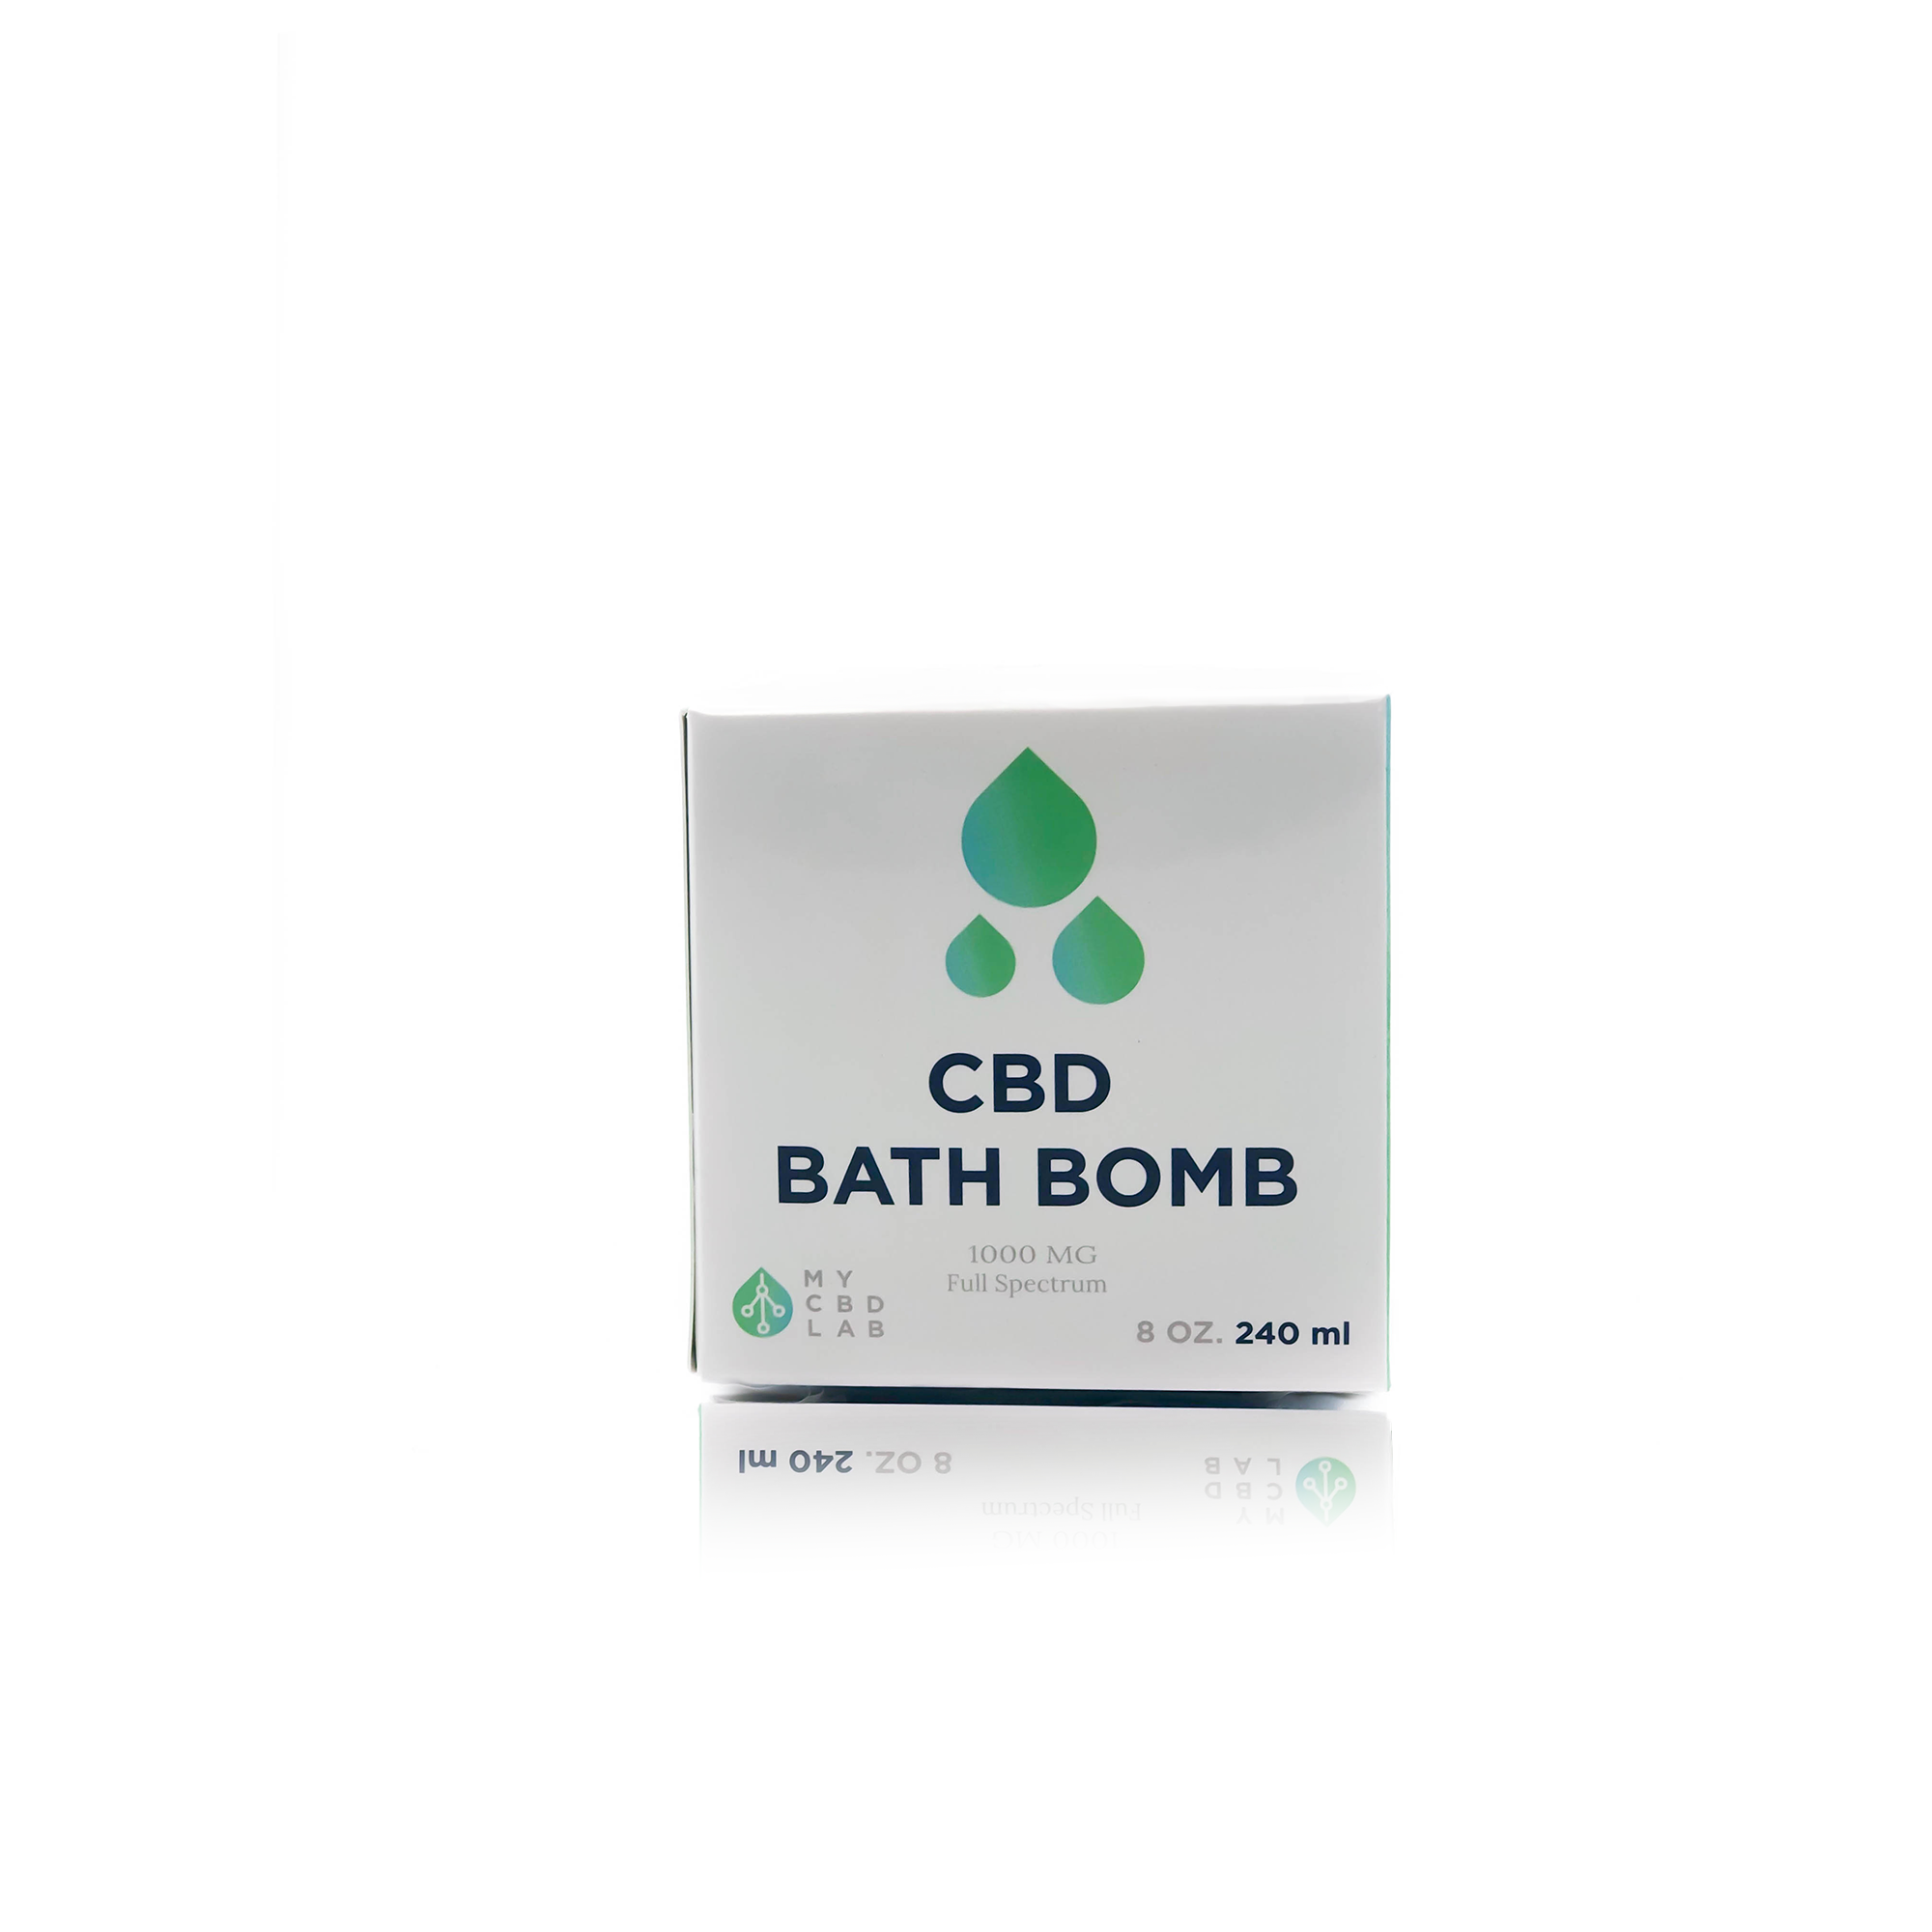 1000 mg cbd bath bomb